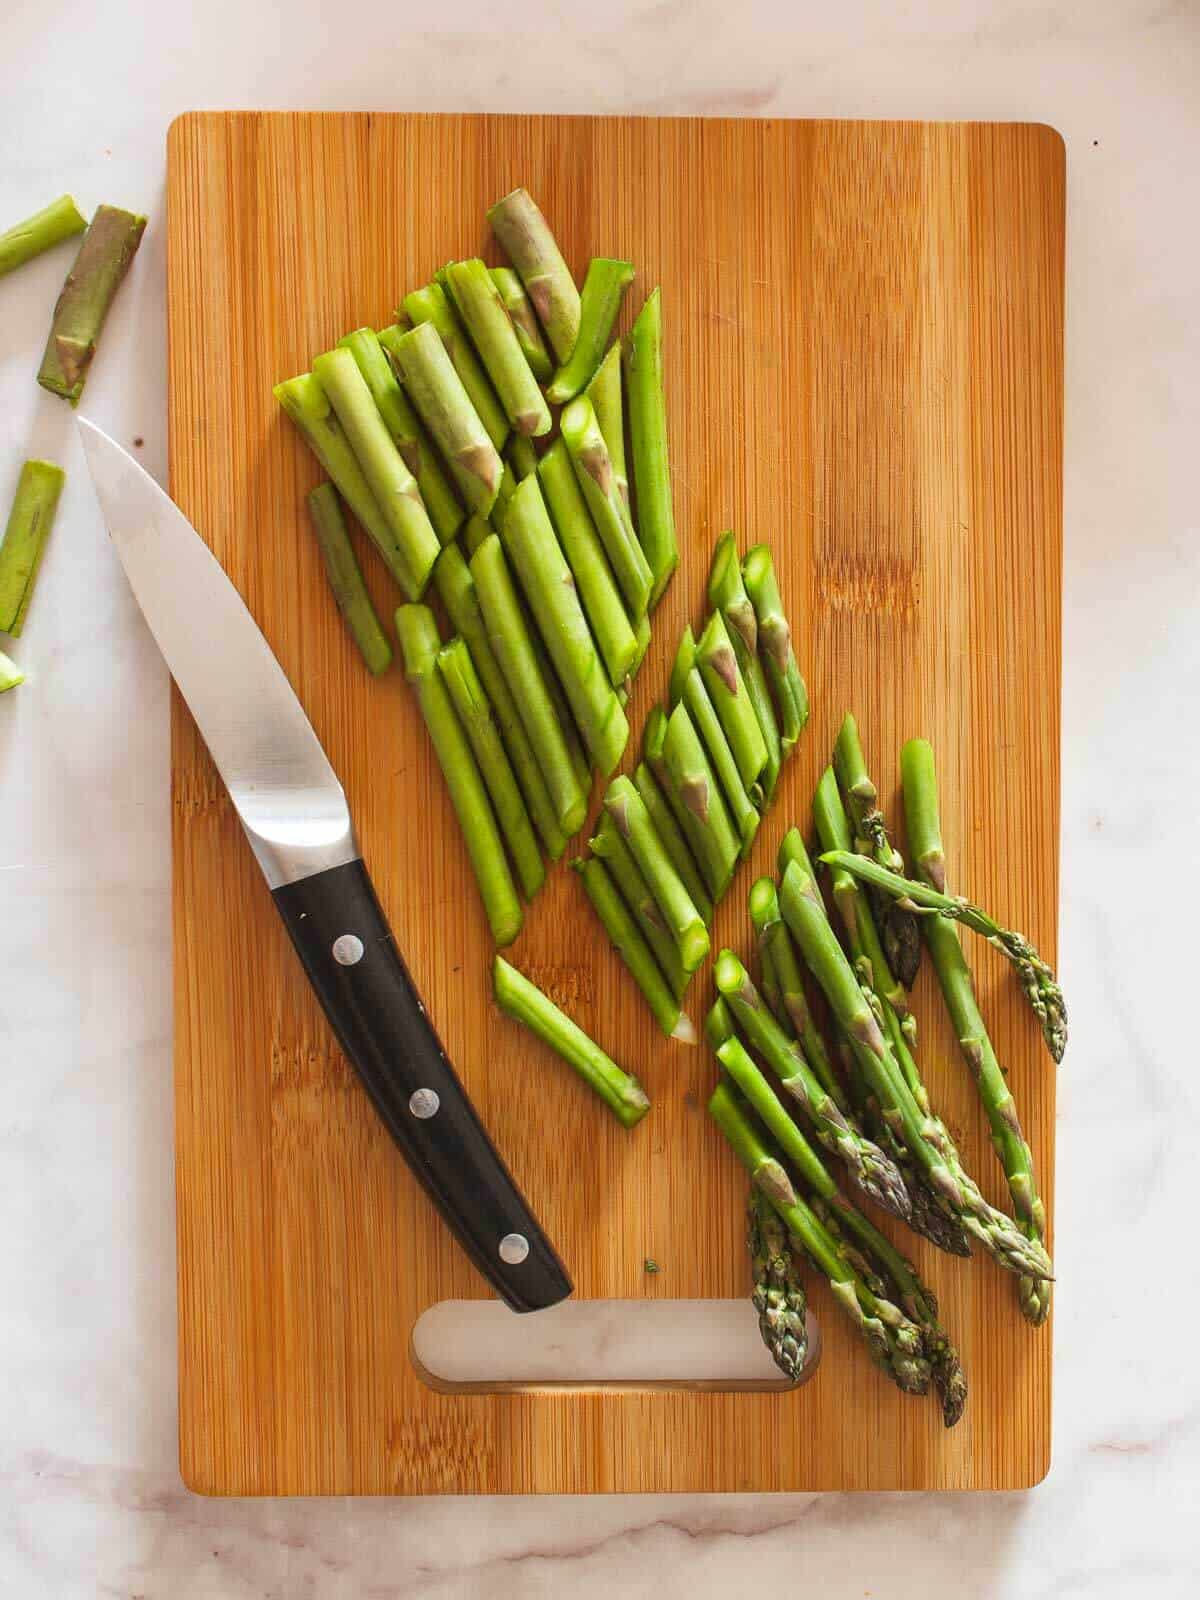 cut the asparagus in diagonal